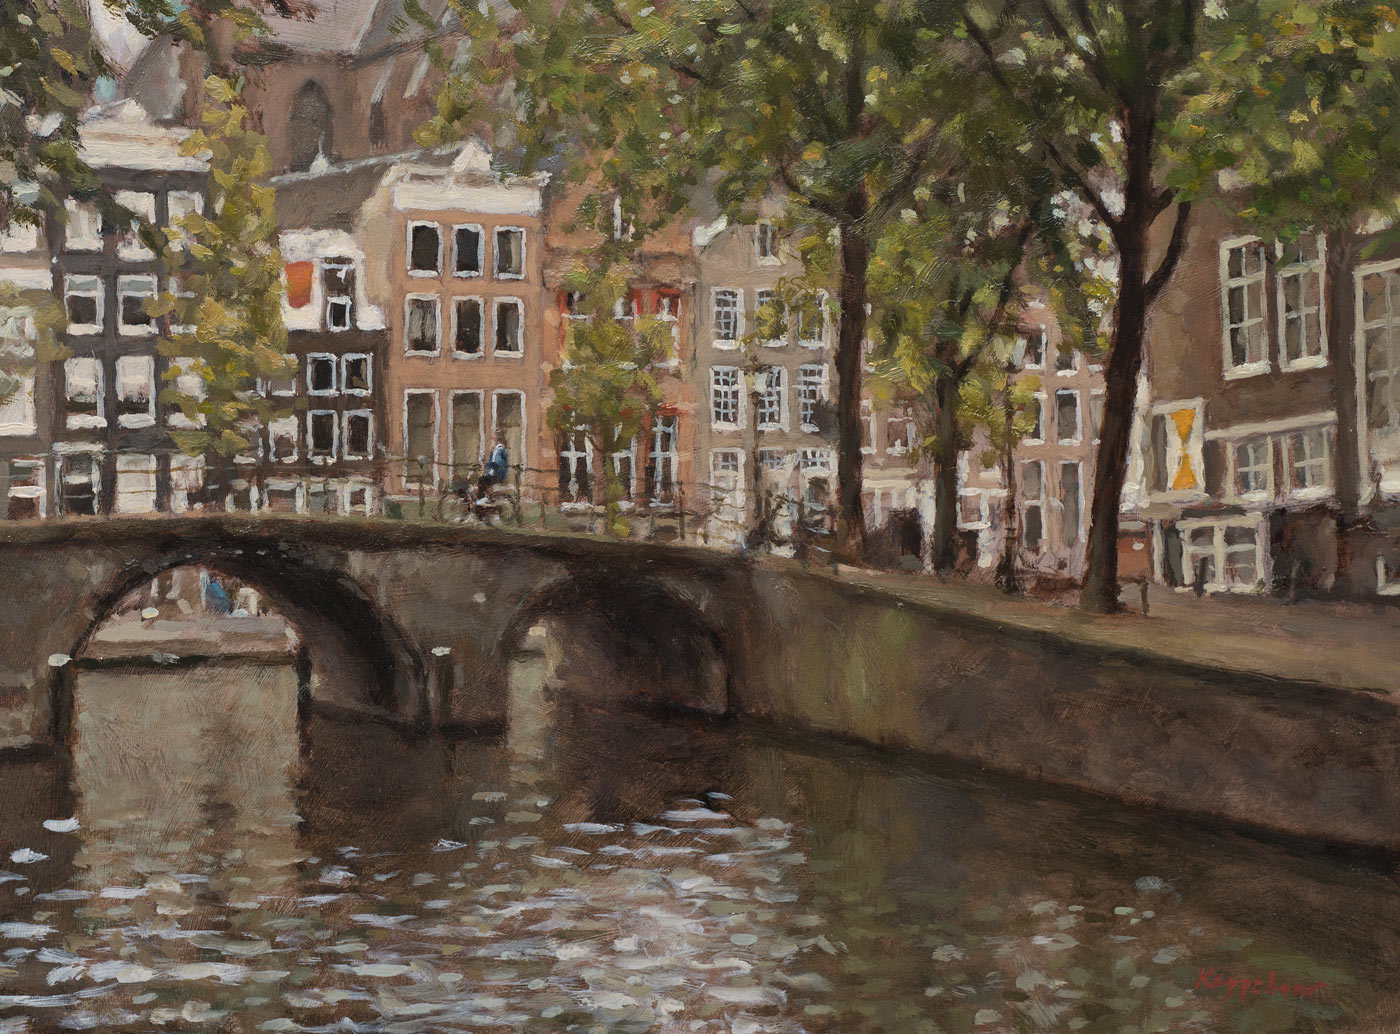 stadsgezicht: 'De 4 Heemskinderensluis (brug 28)' olieverf op linnen door kunstschilder Frans Koppelaar.